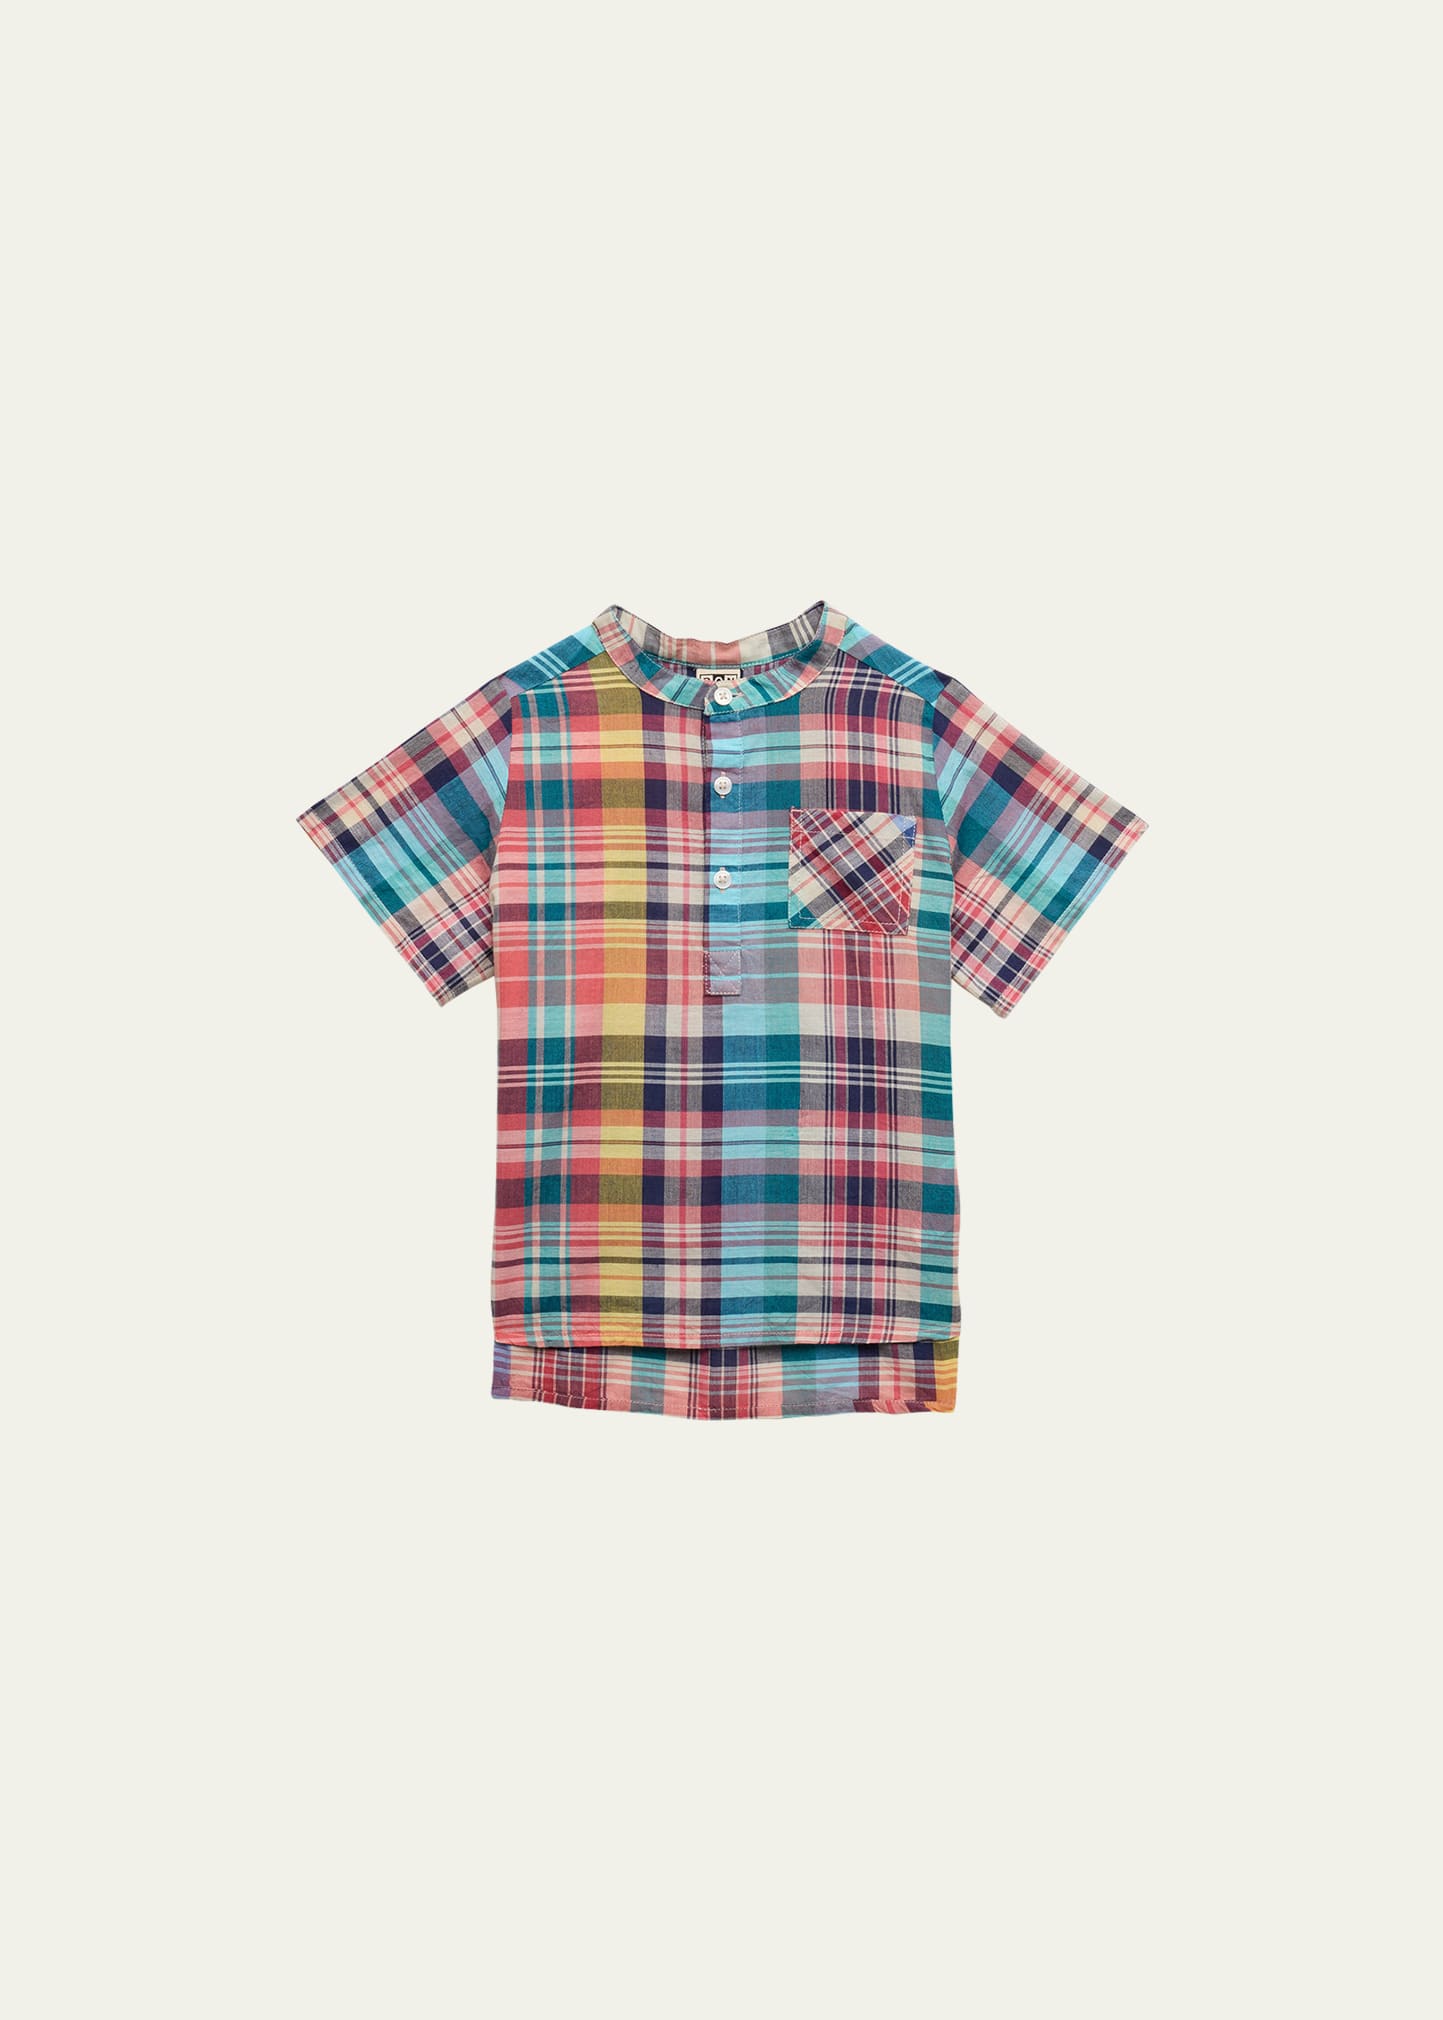 Bonton Boy's Plaid-Print Shirt, Size 6M-12